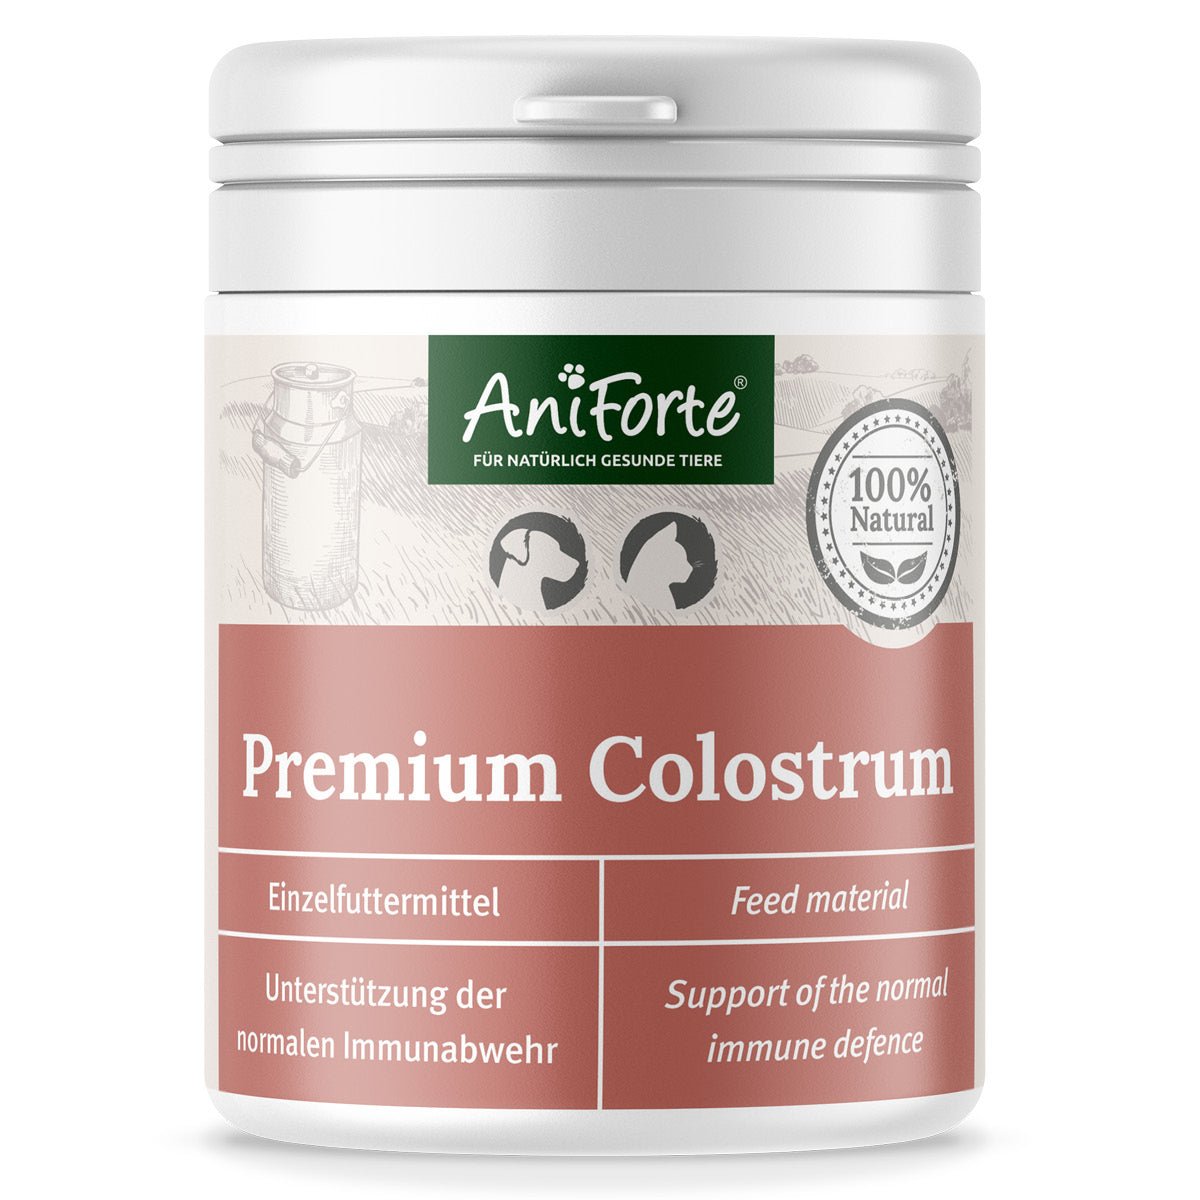 Premium Colostrum - AniForte